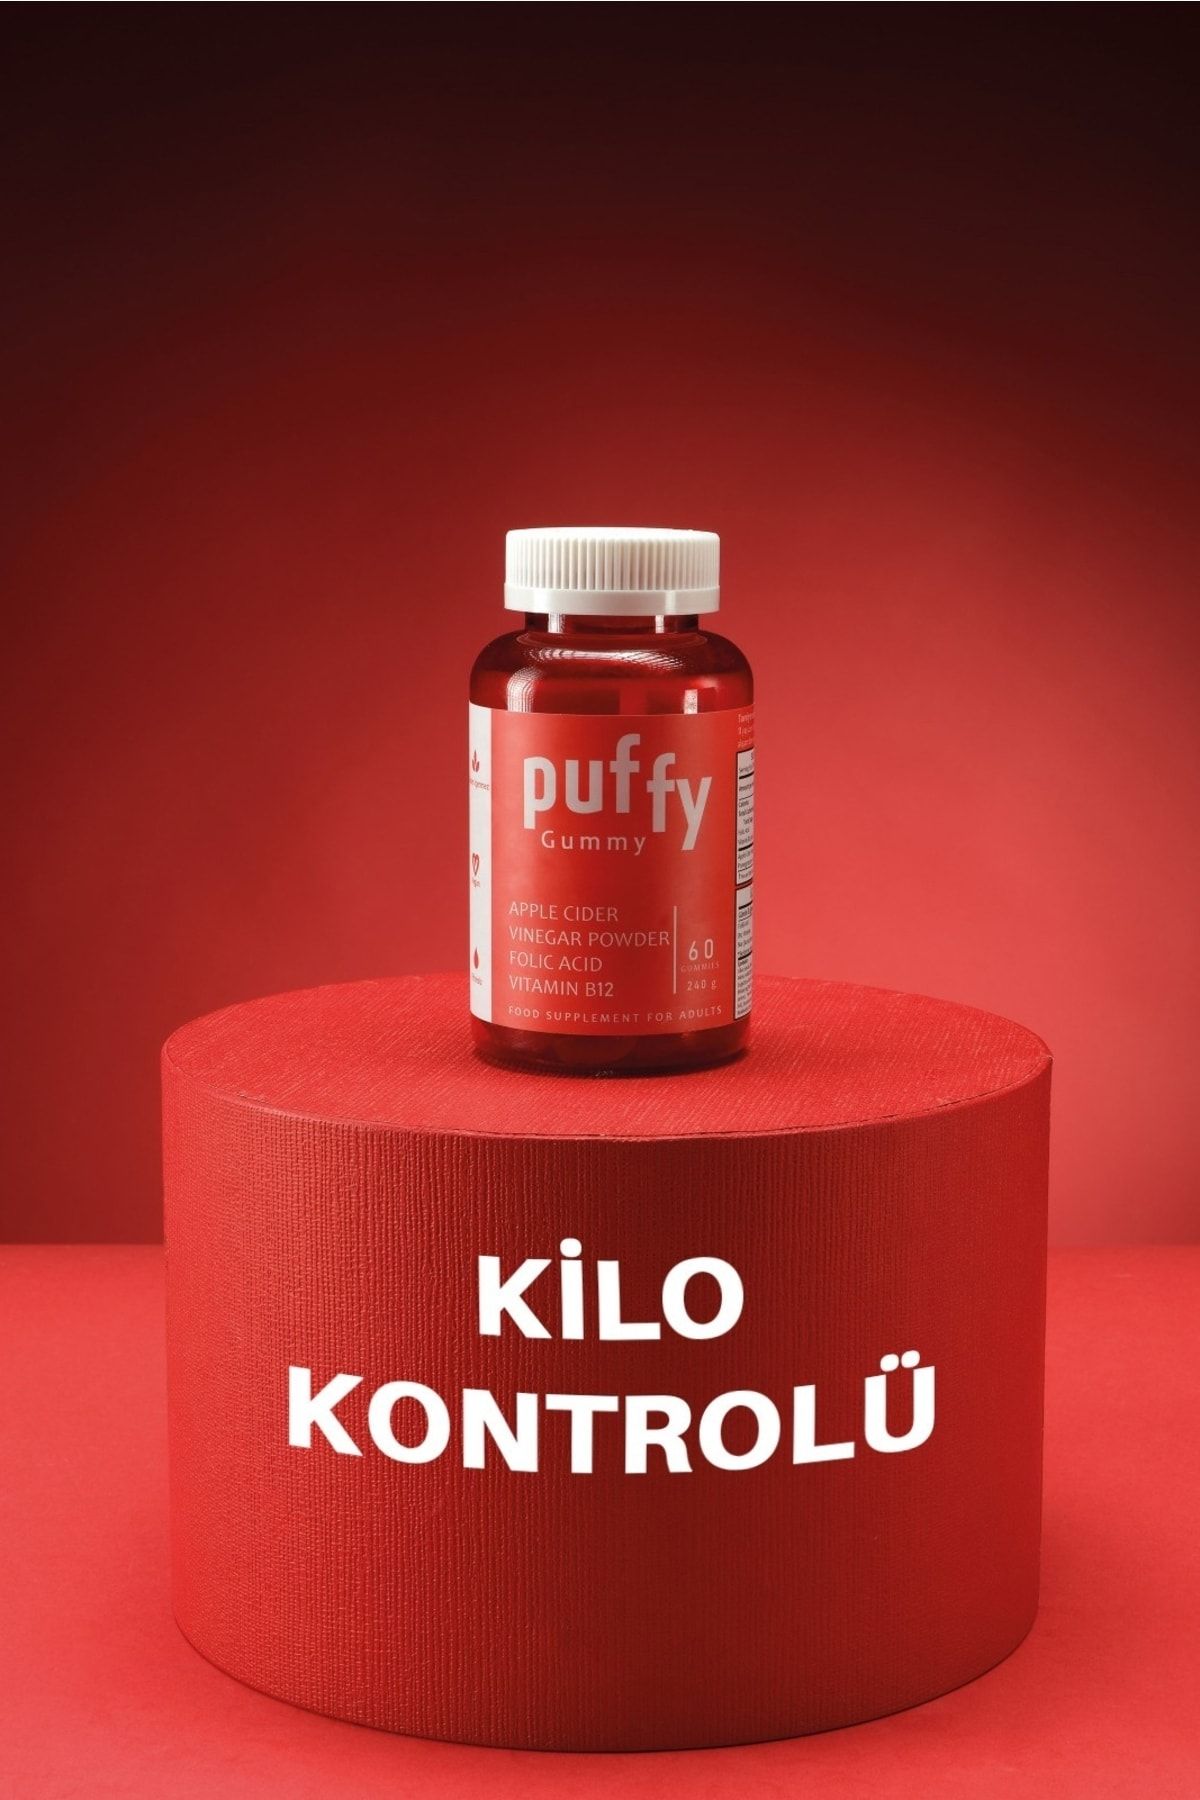 Puffy Gummy Kilo Kontrolü, Enerji, Bağışıklık, Diyet Desteği